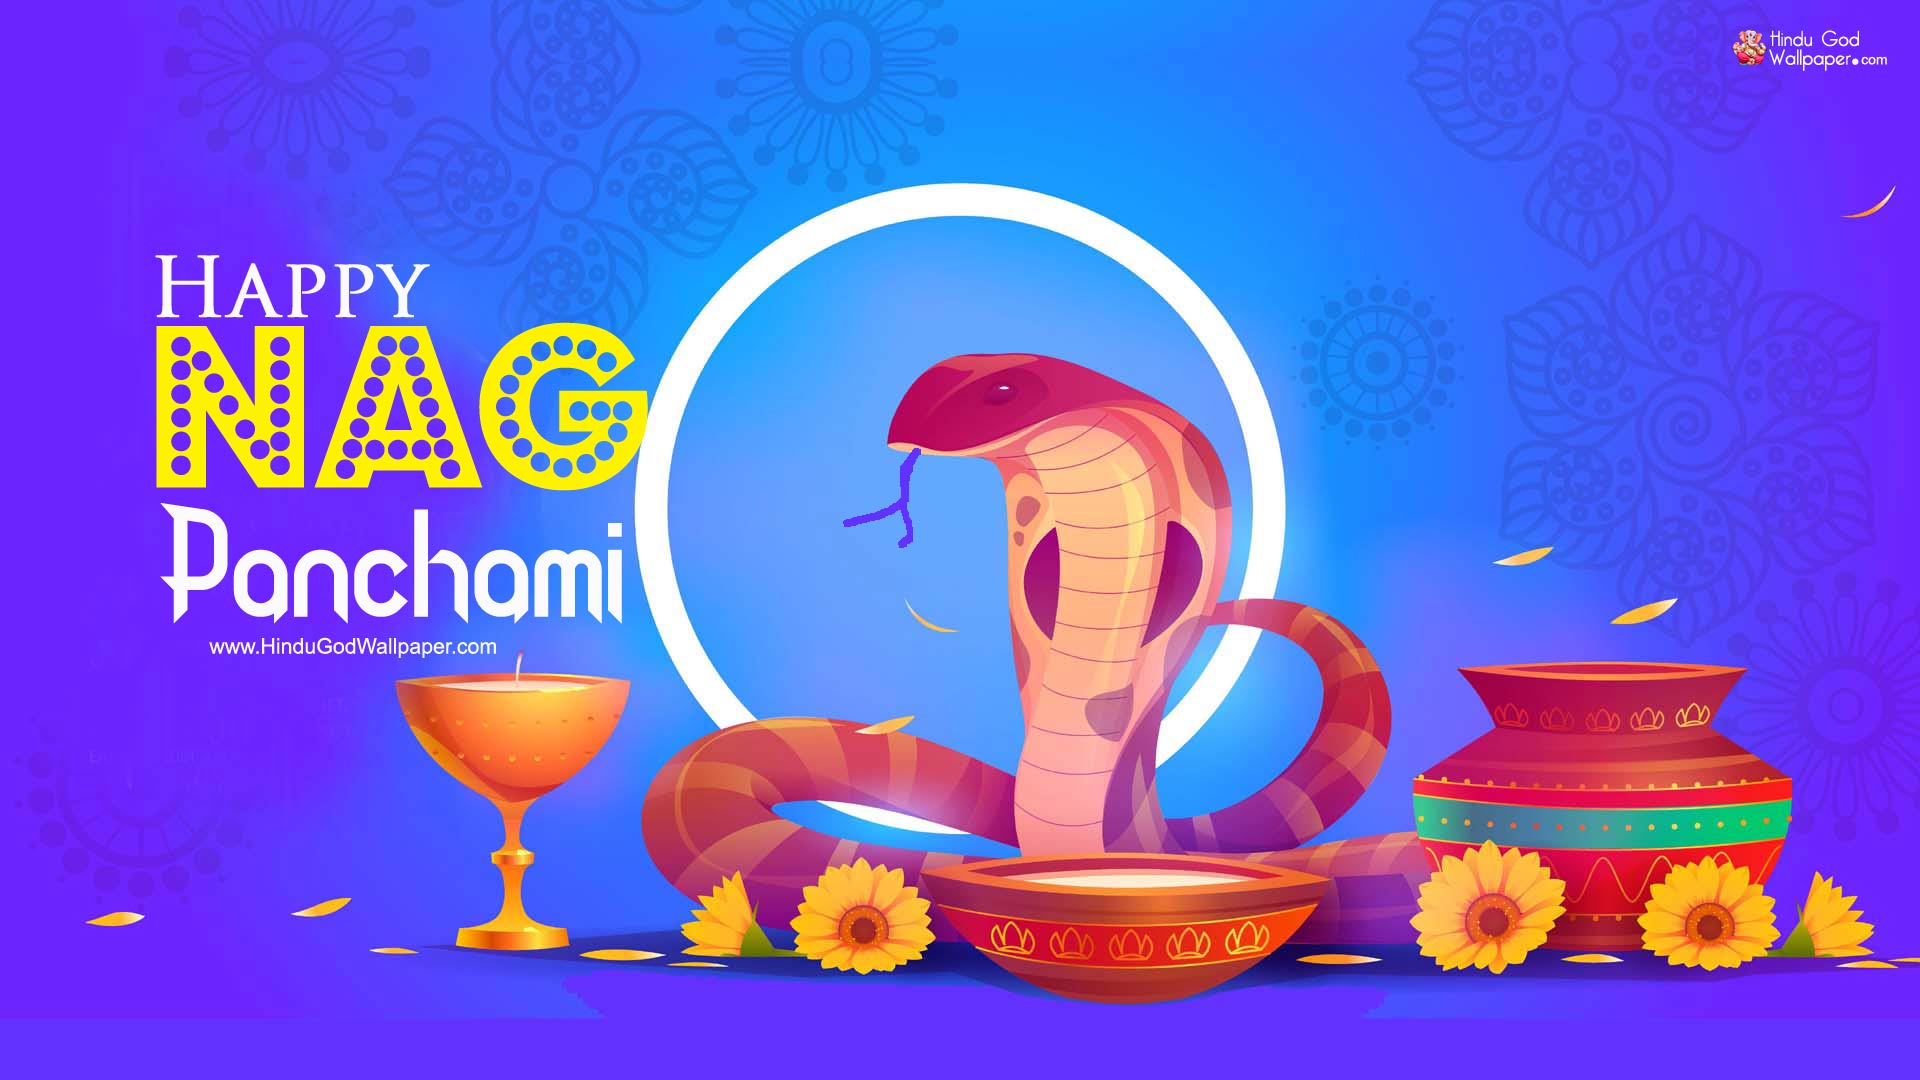 Happy Nag Panchami HD Wallpaper 1080p Free Download